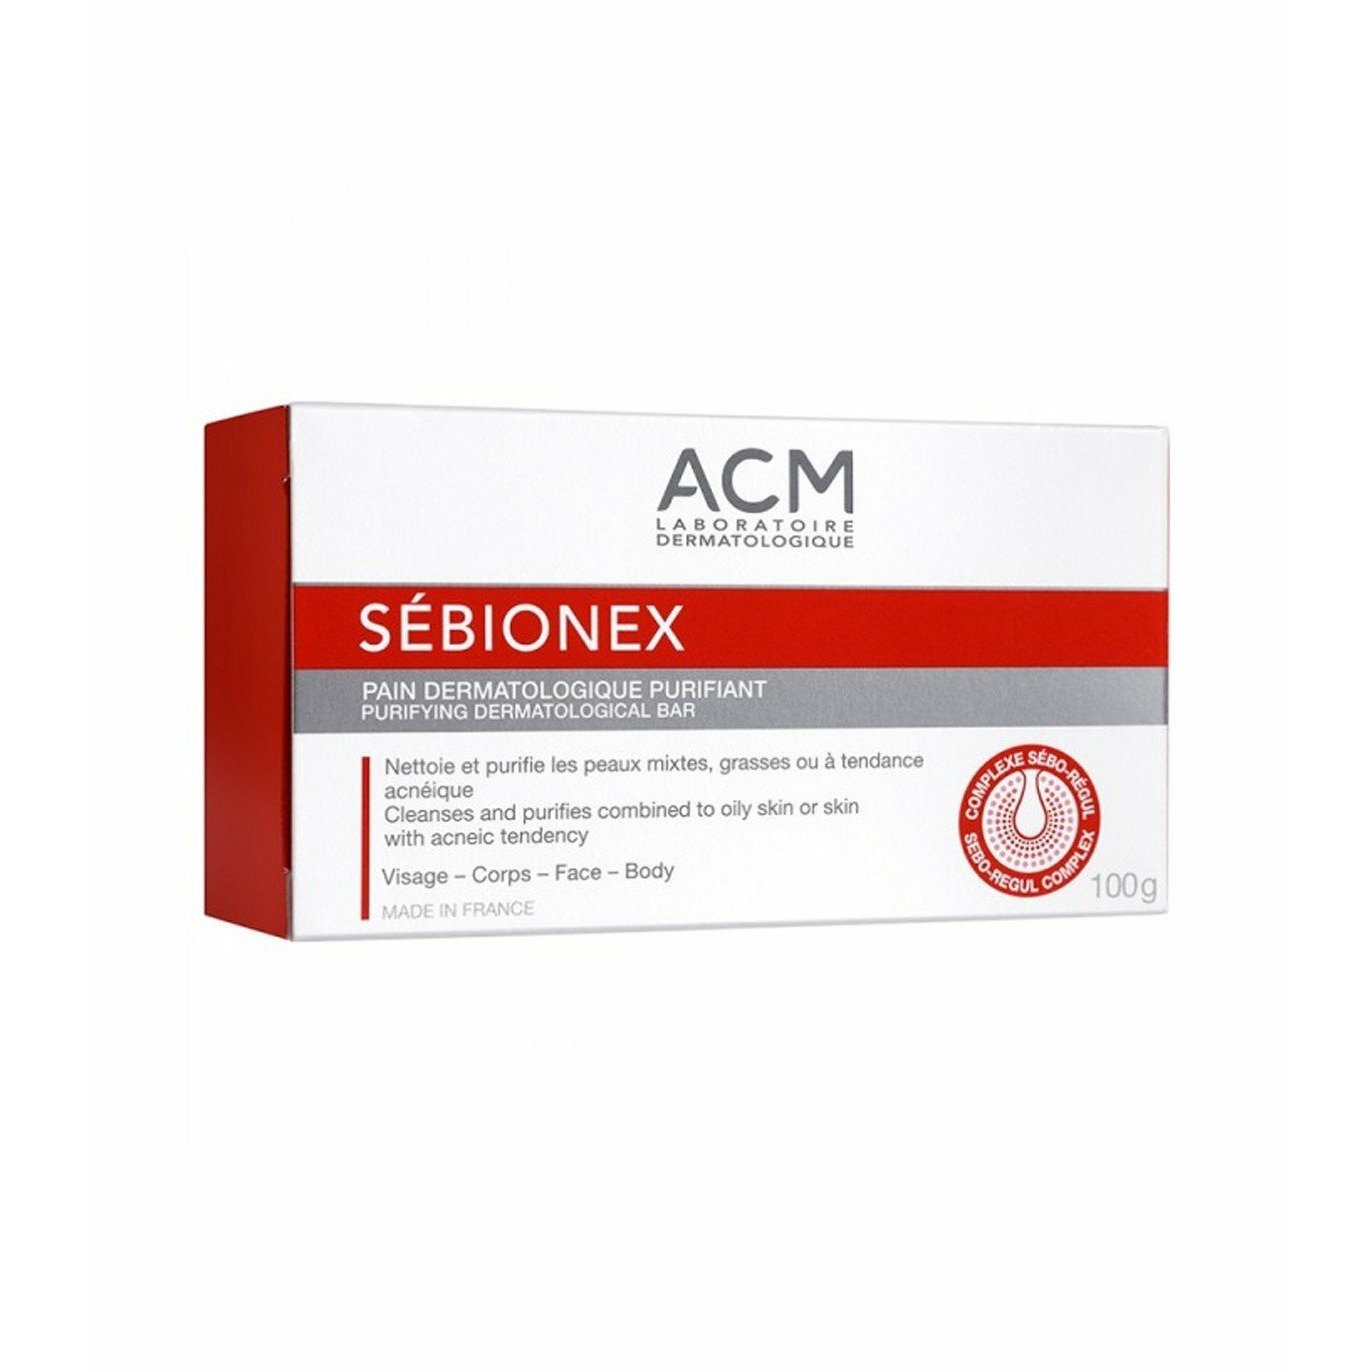 Sébionex Pain Dermatologie Purifiant 100g Acm